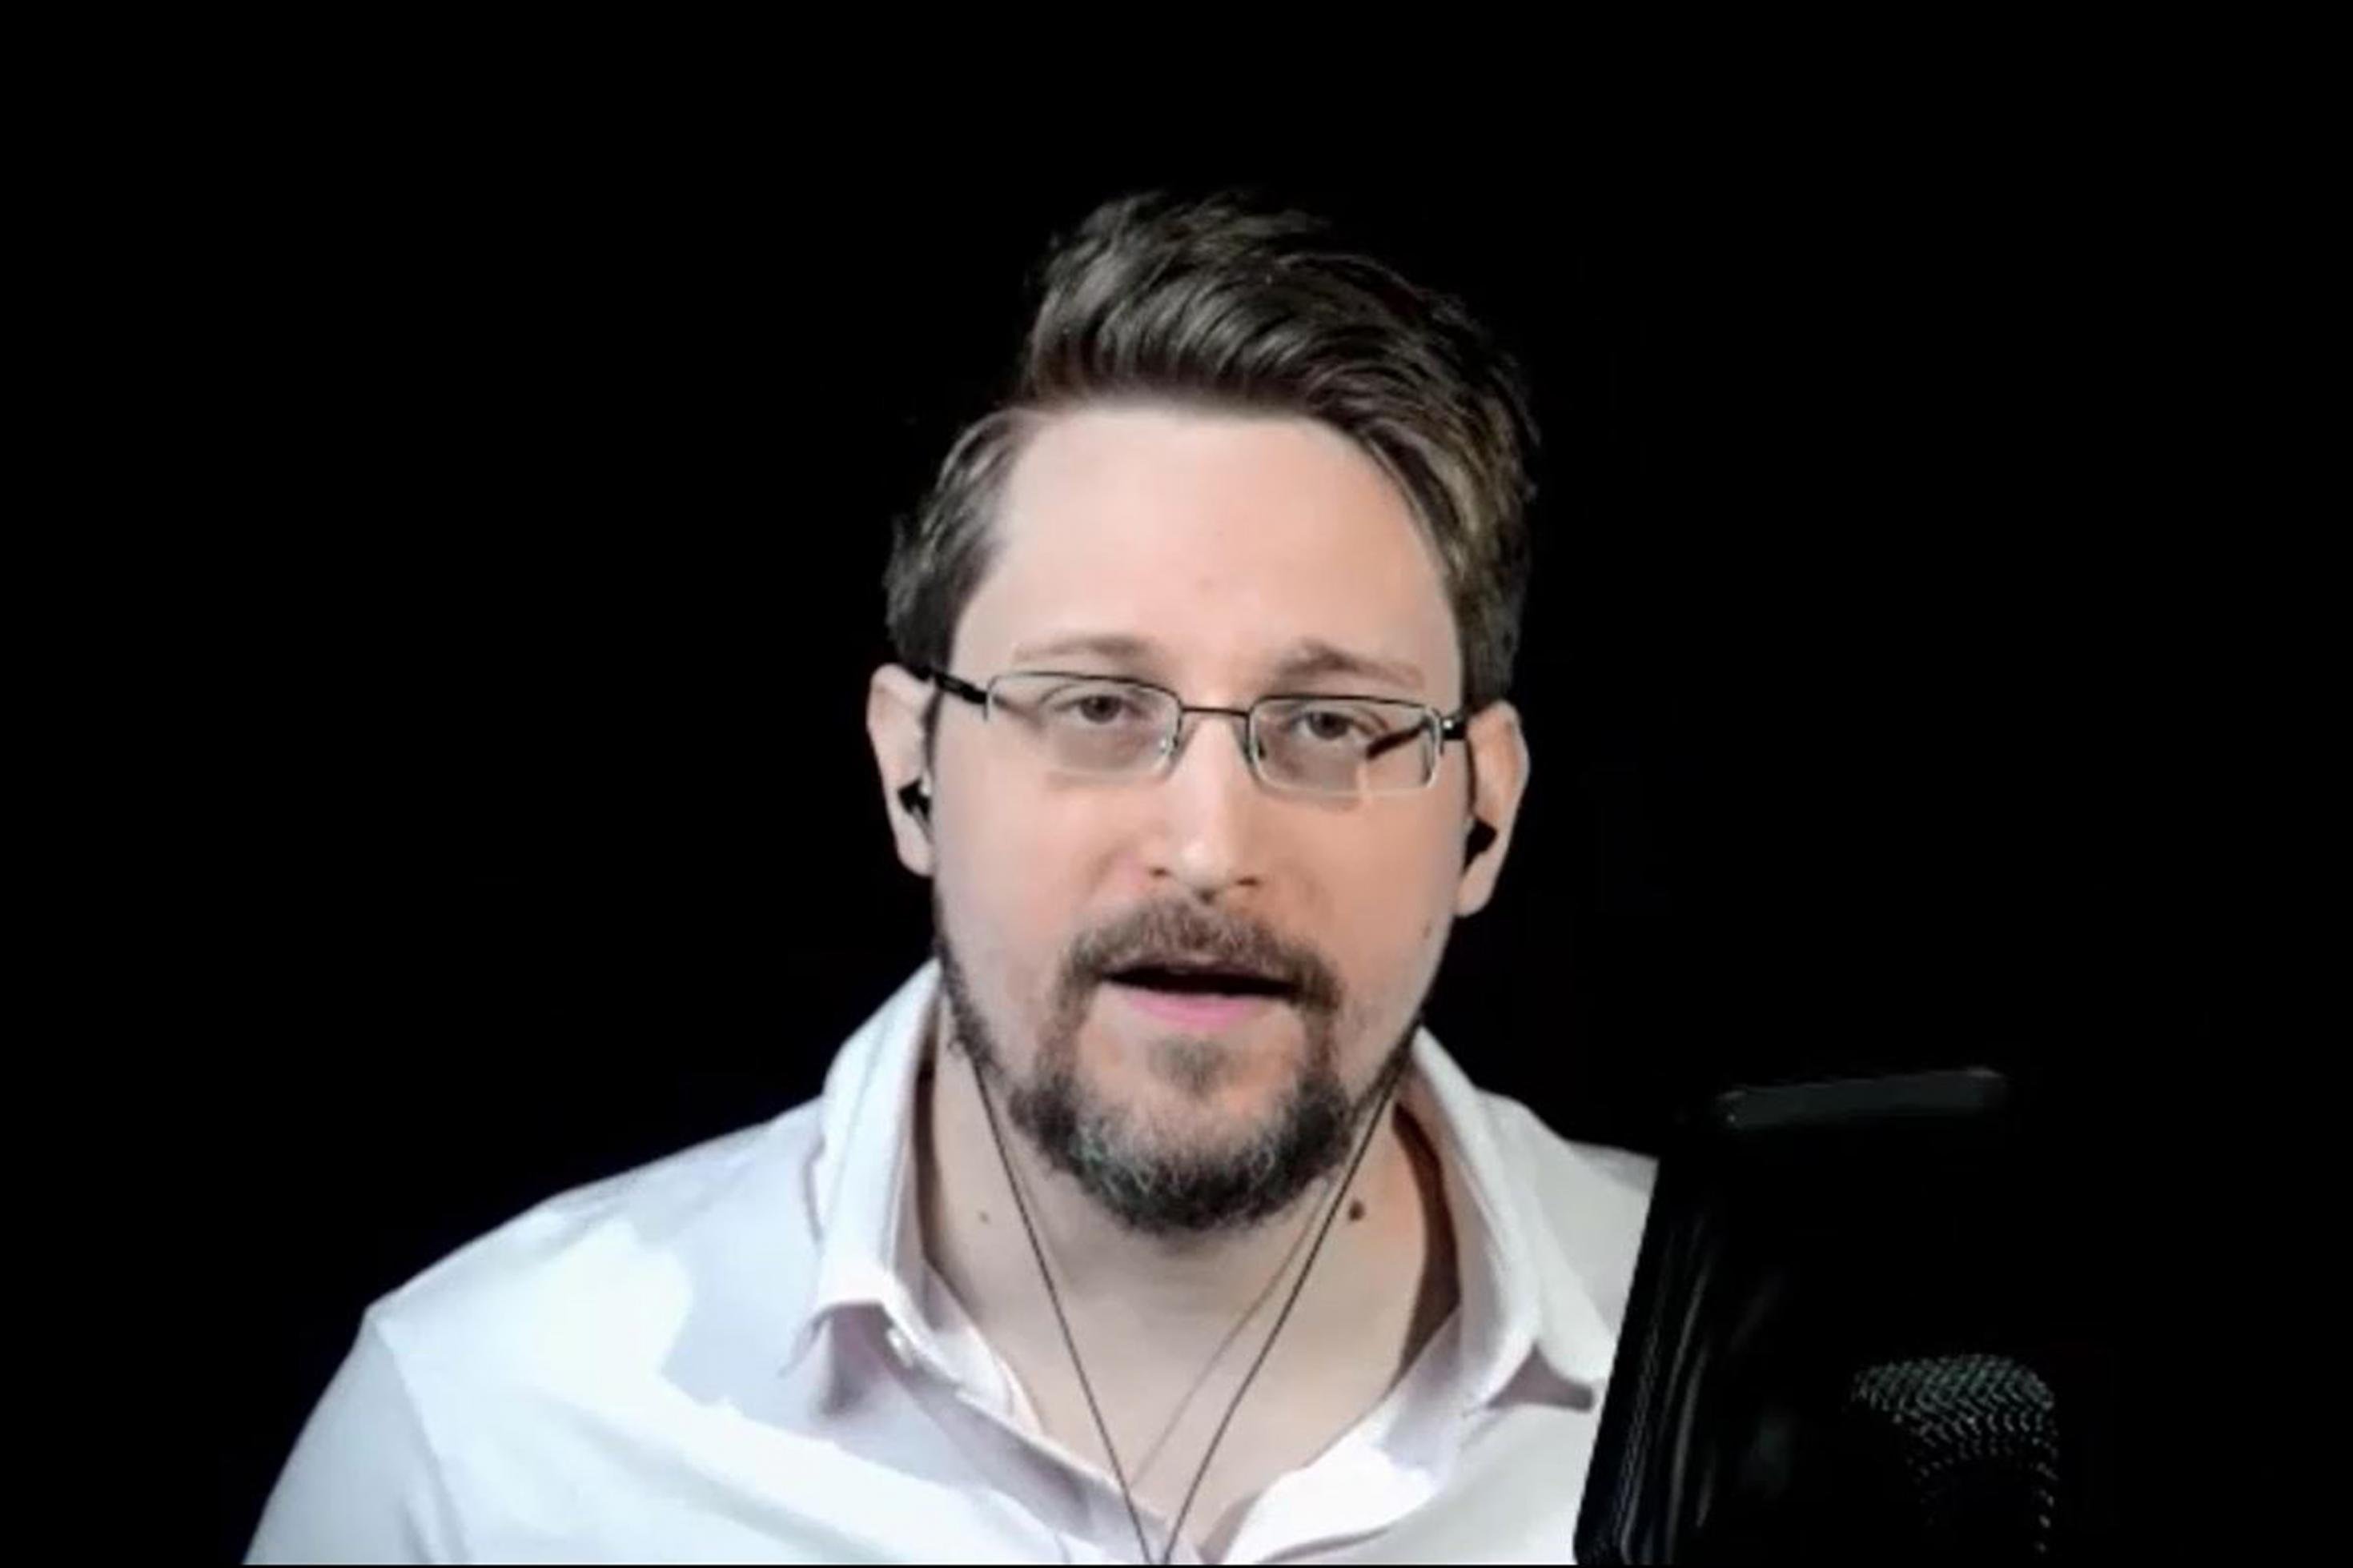 Edward Snowden während einer Videokonferenz